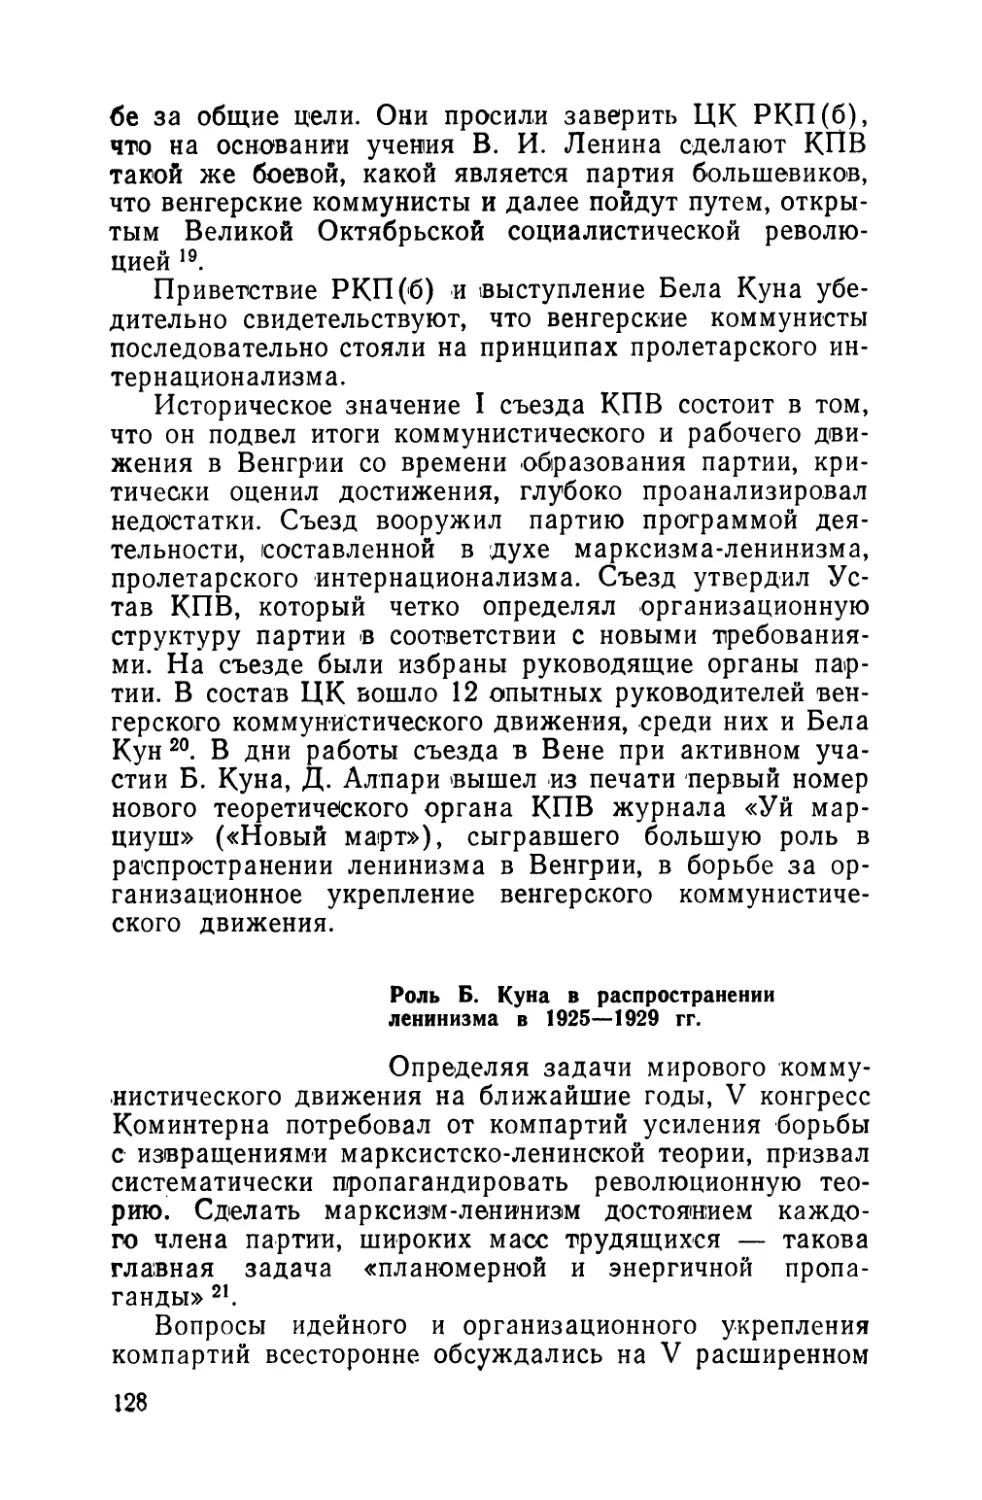 Роль Б. Куна в распространении ленинизма в 1925—1929 гг.